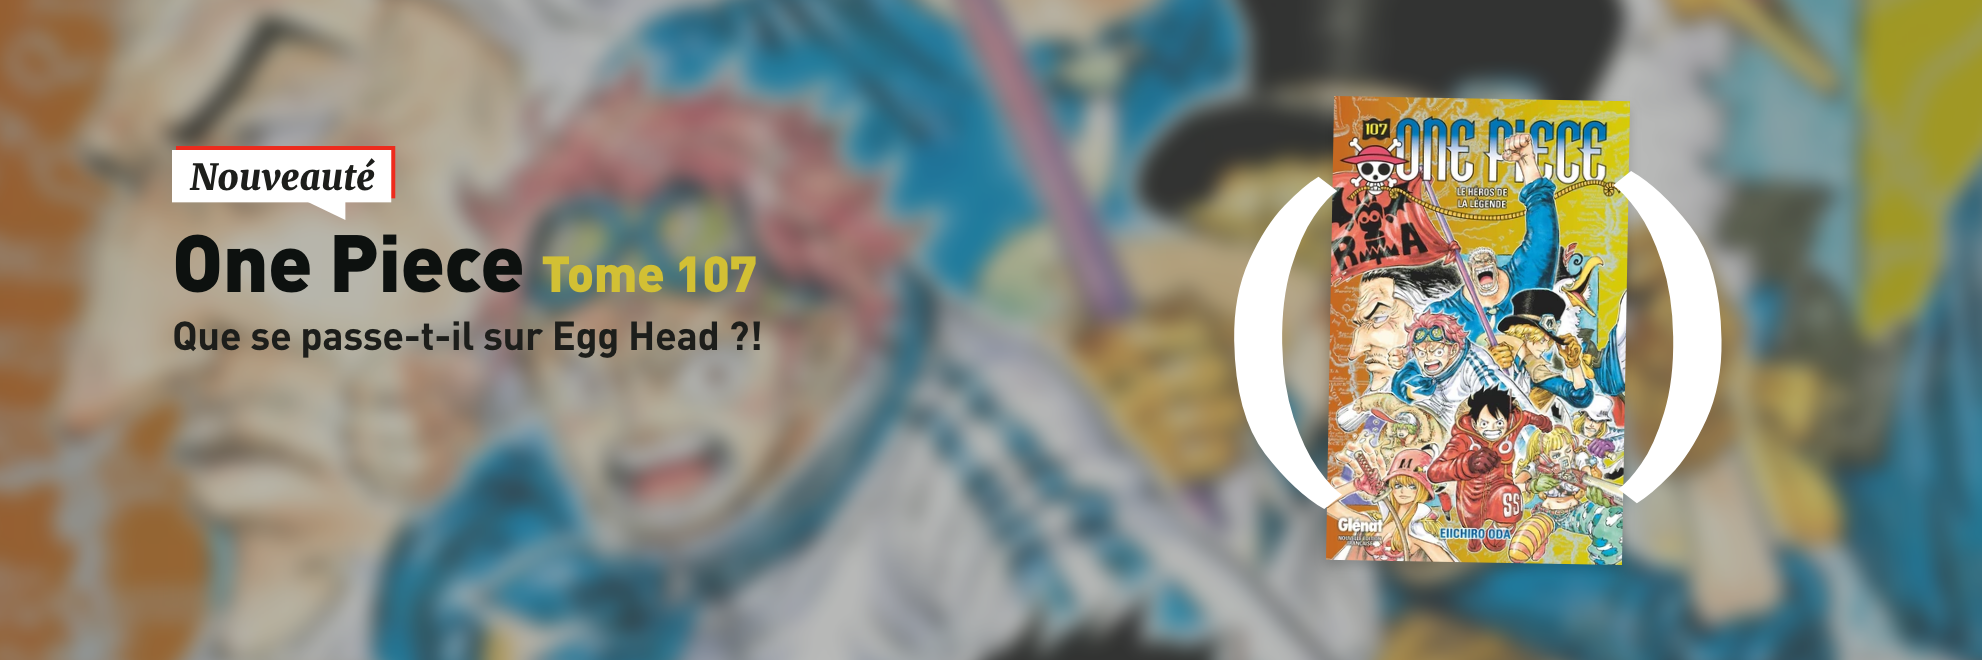 Nouveauté : One Piece Tome 107